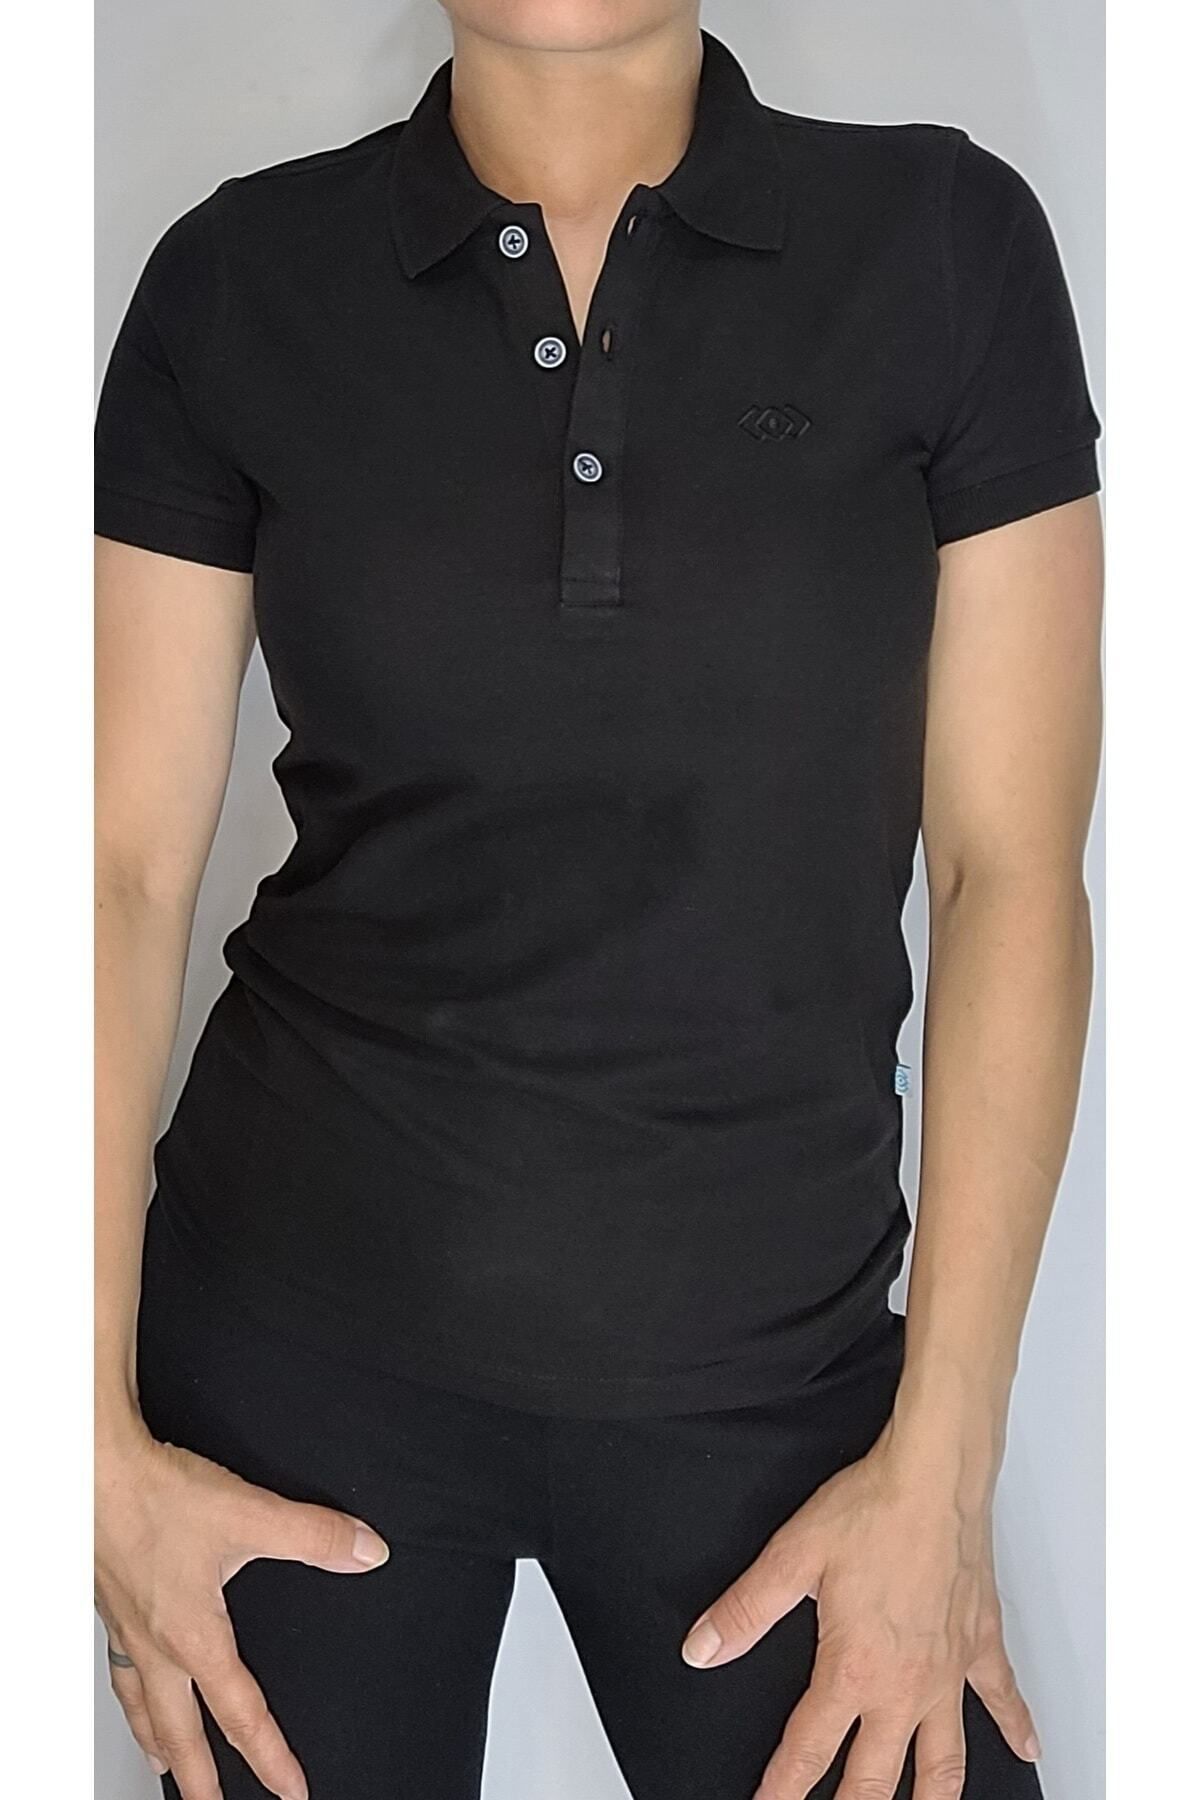 Dafron Classic siyah polo yaka t-shirt